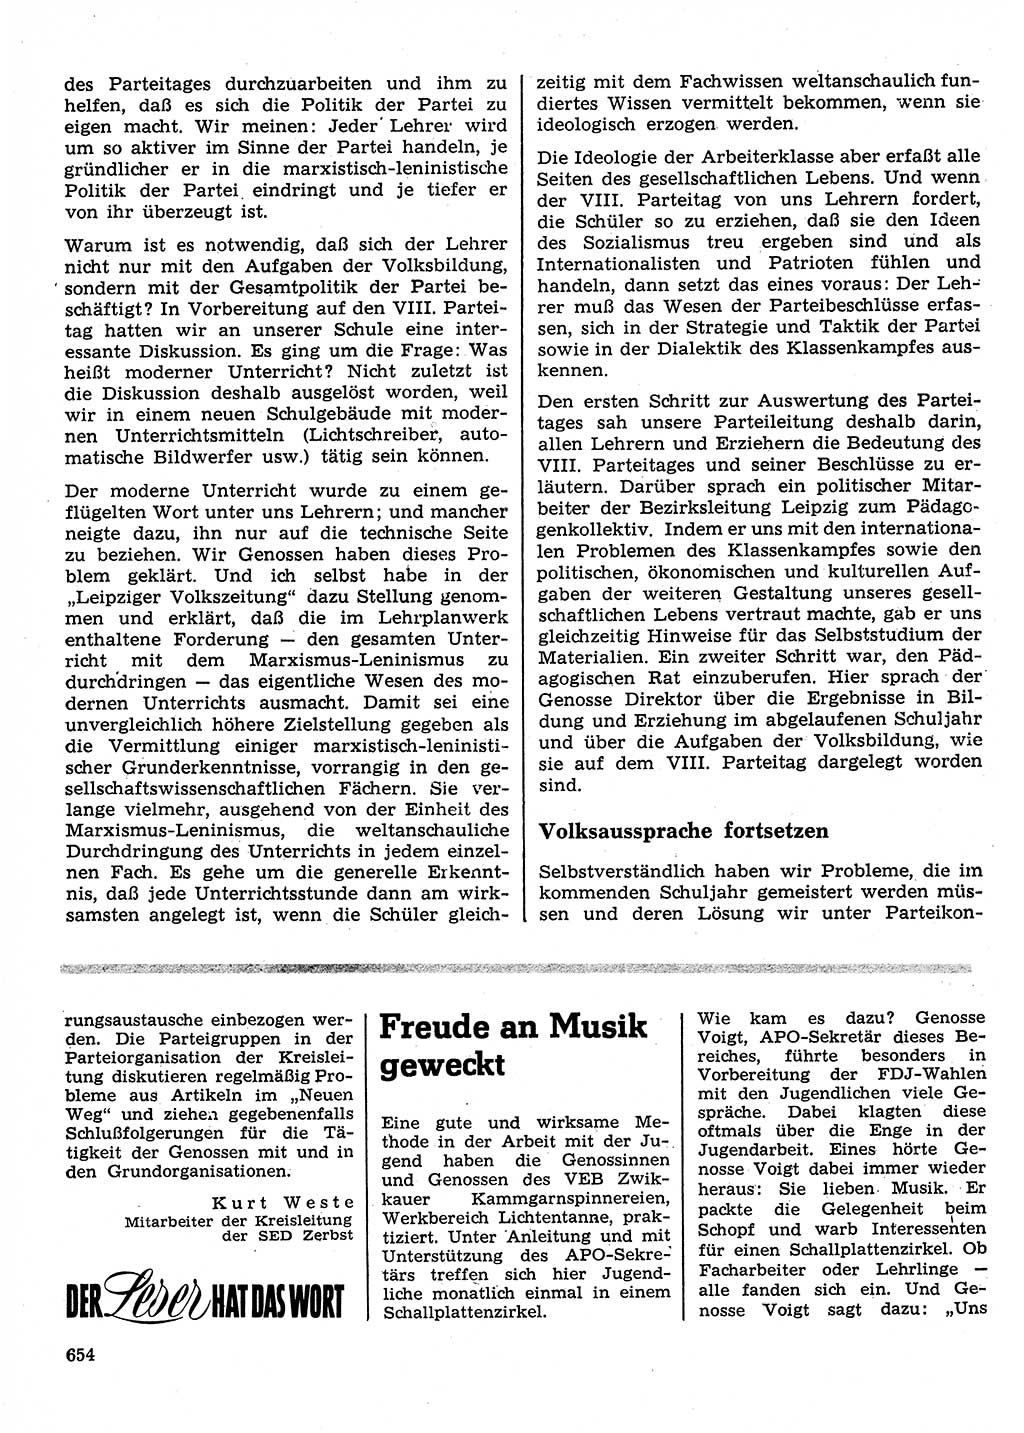 Neuer Weg (NW), Organ des Zentralkomitees (ZK) der SED (Sozialistische Einheitspartei Deutschlands) für Fragen des Parteilebens, 26. Jahrgang [Deutsche Demokratische Republik (DDR)] 1971, Seite 654 (NW ZK SED DDR 1971, S. 654)